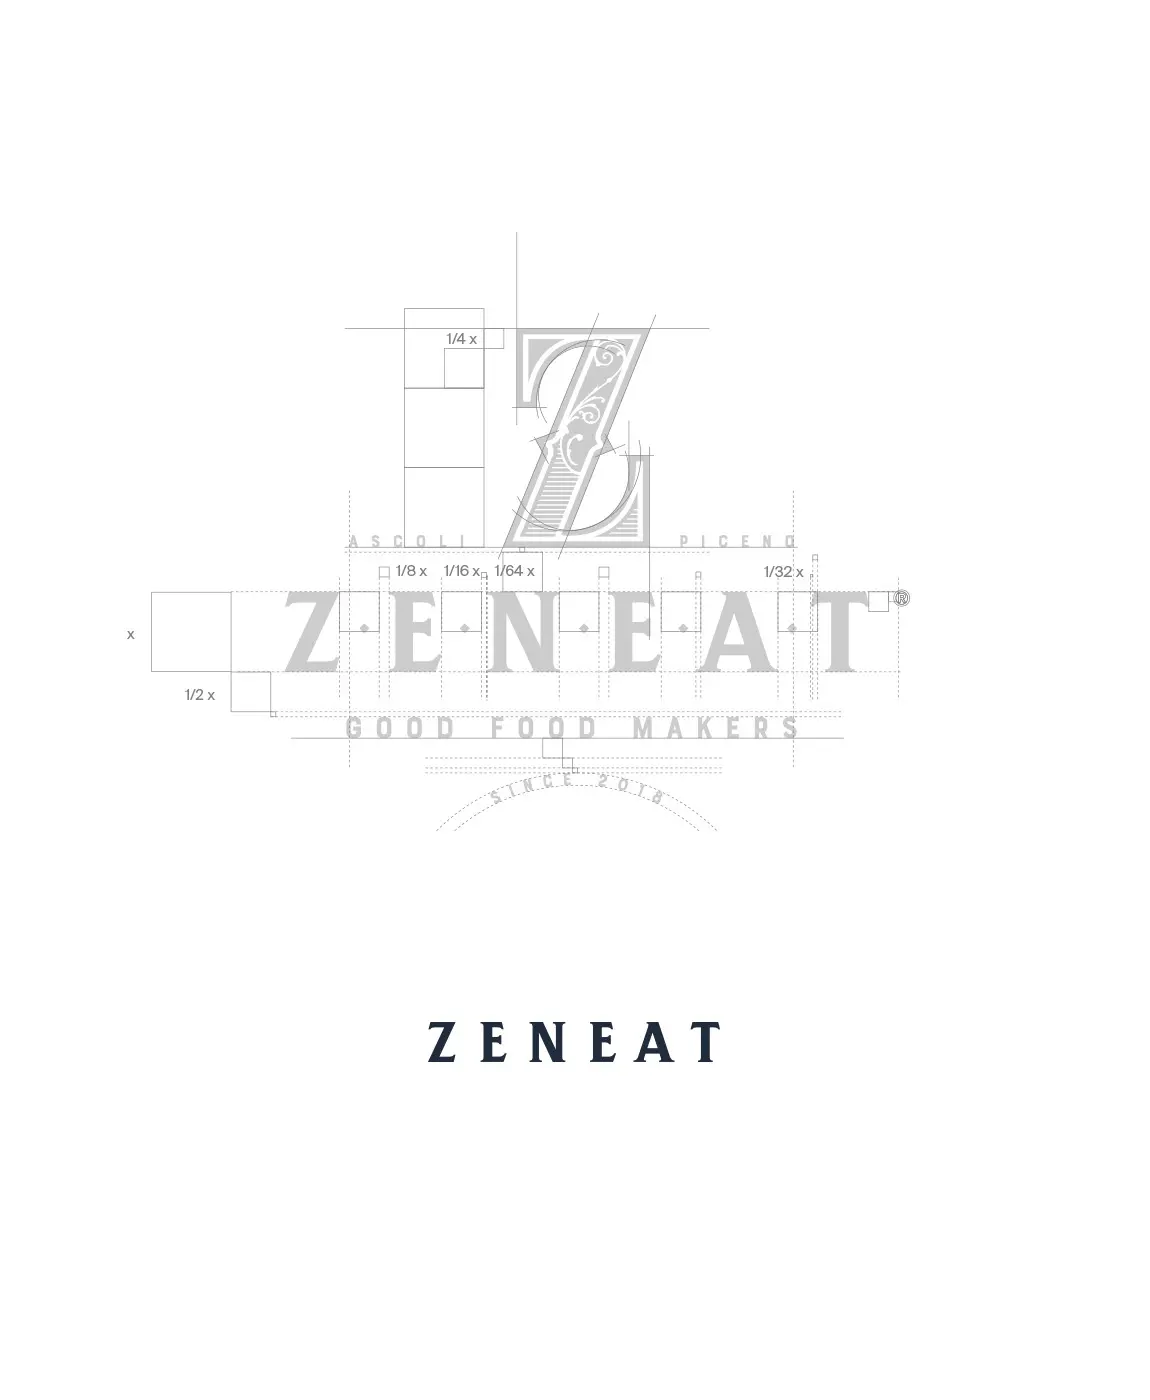 Zeneat餐饮品牌视觉识别设计